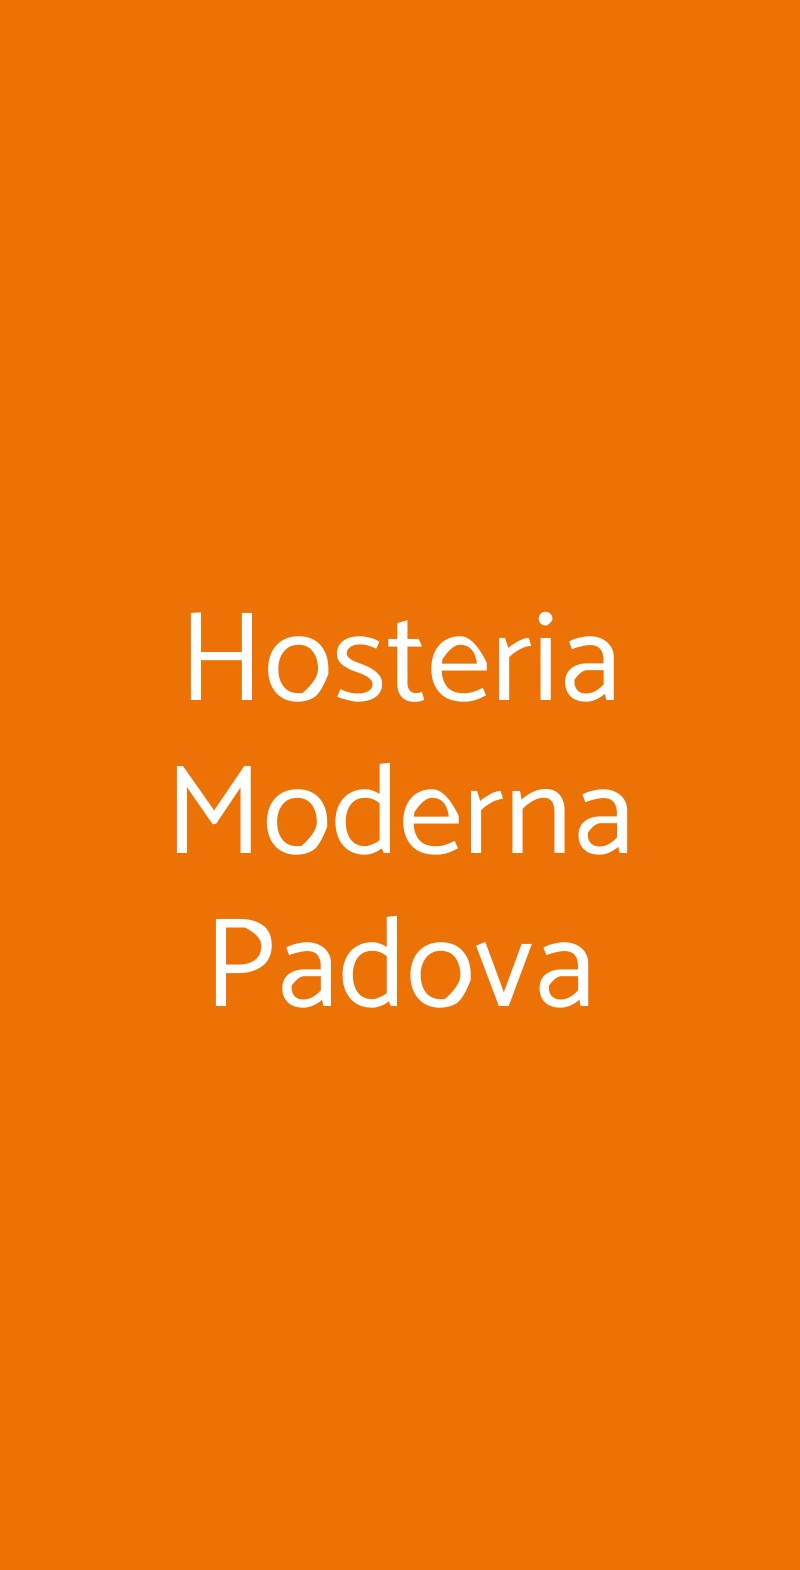 Hosteria Moderna Padova Padova menù 1 pagina